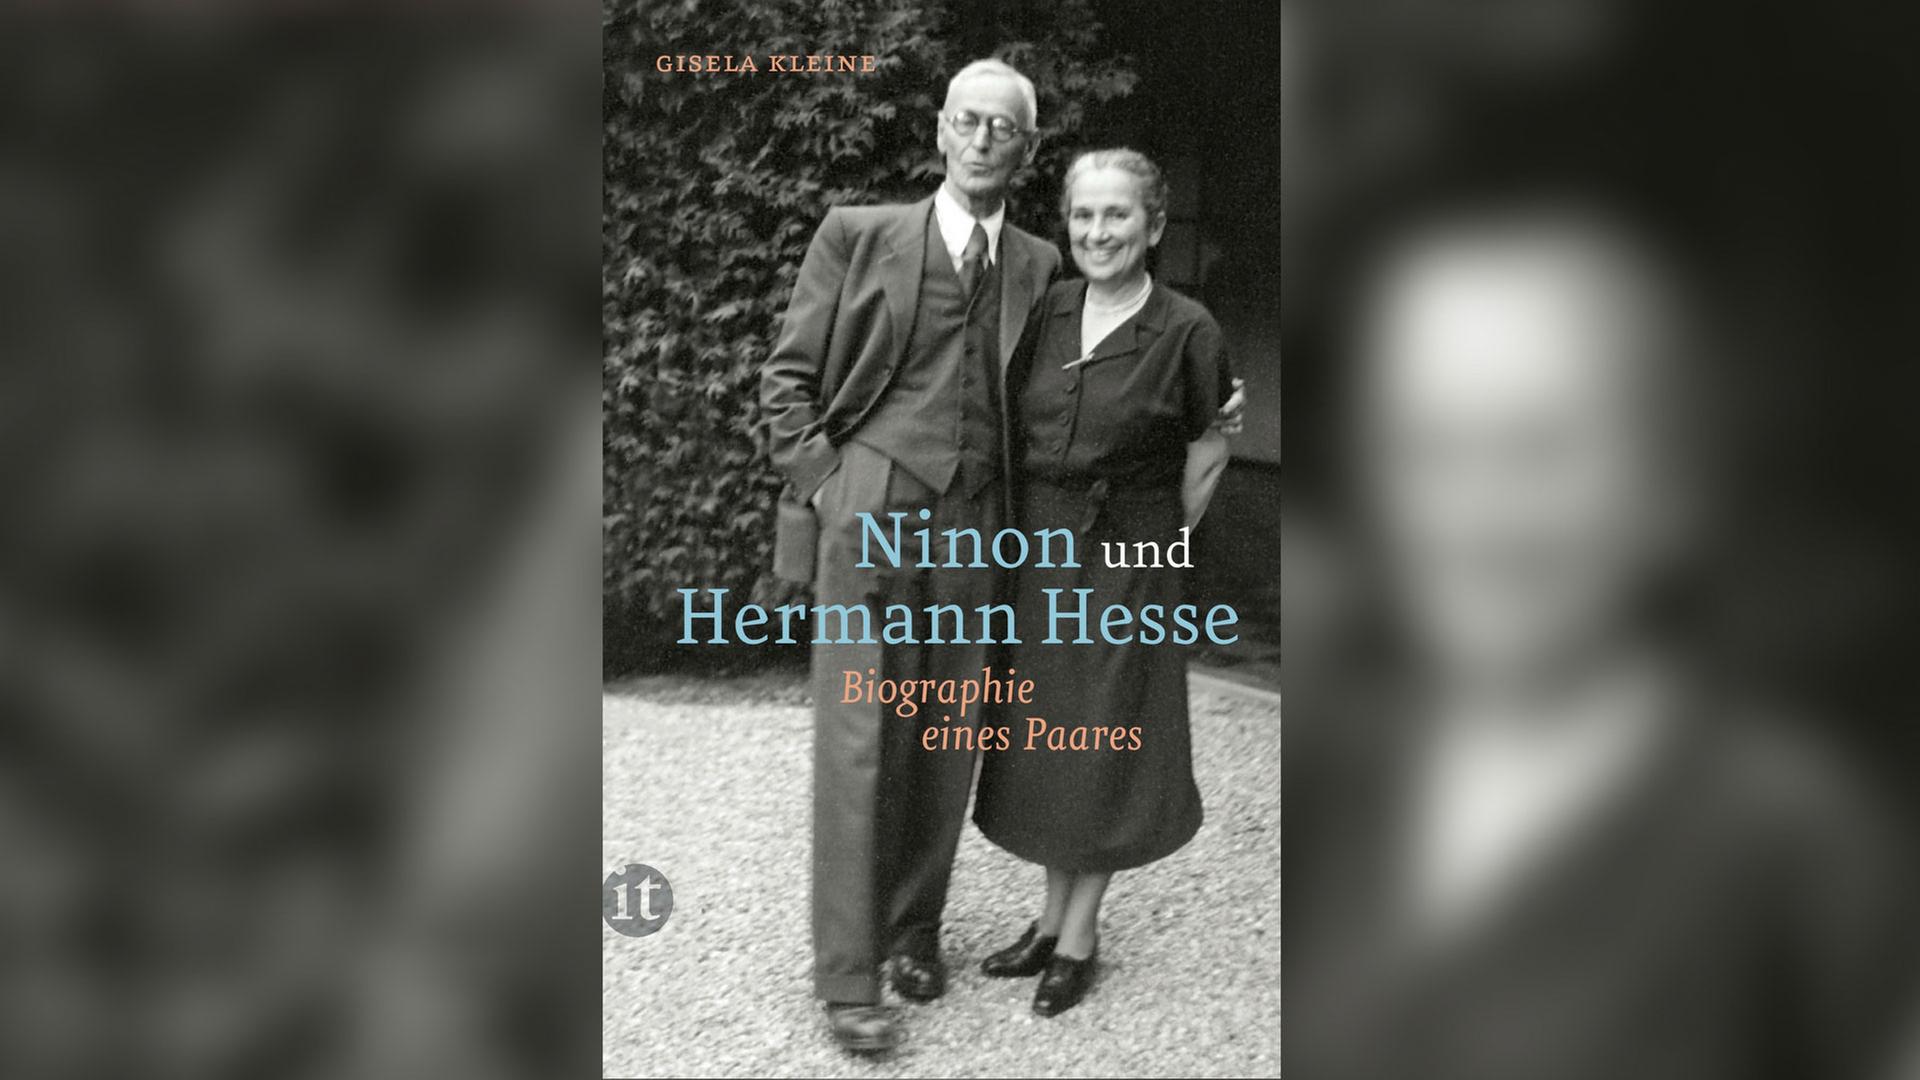 Cover - Gisela Kleine: "Ninon und Hermann Hesse. Biographie eines Paares"